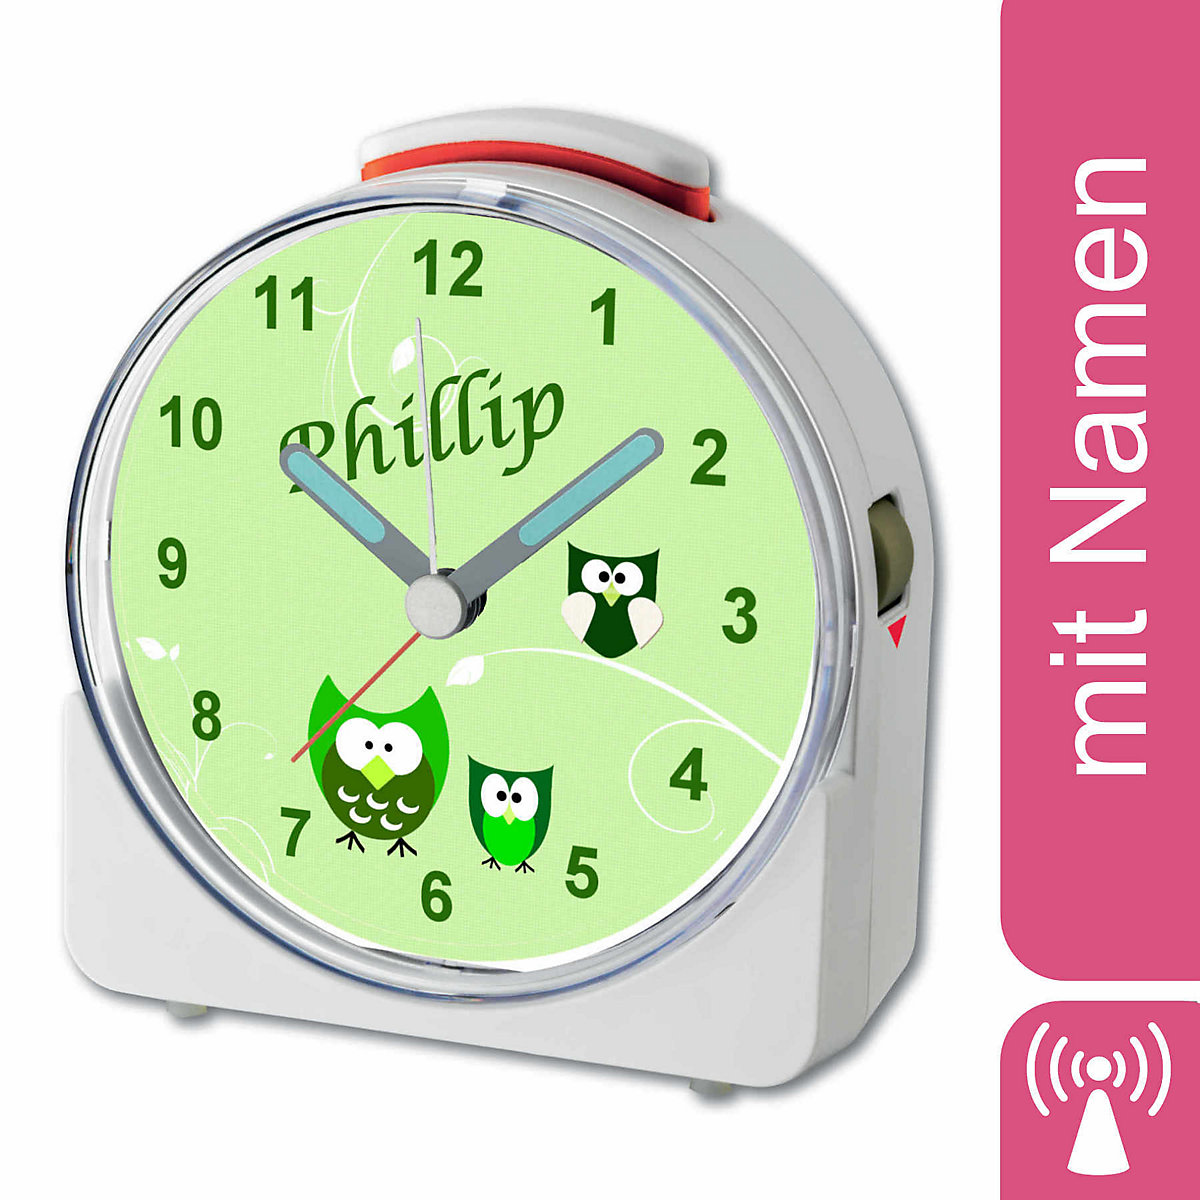 CreaDesign Kinder Funkwecker weiß personalisiert mit Namen Eule Grün 12-Stunden-Anzeigeformat Geräuschlos/Ohne Ticken Nachtlicht